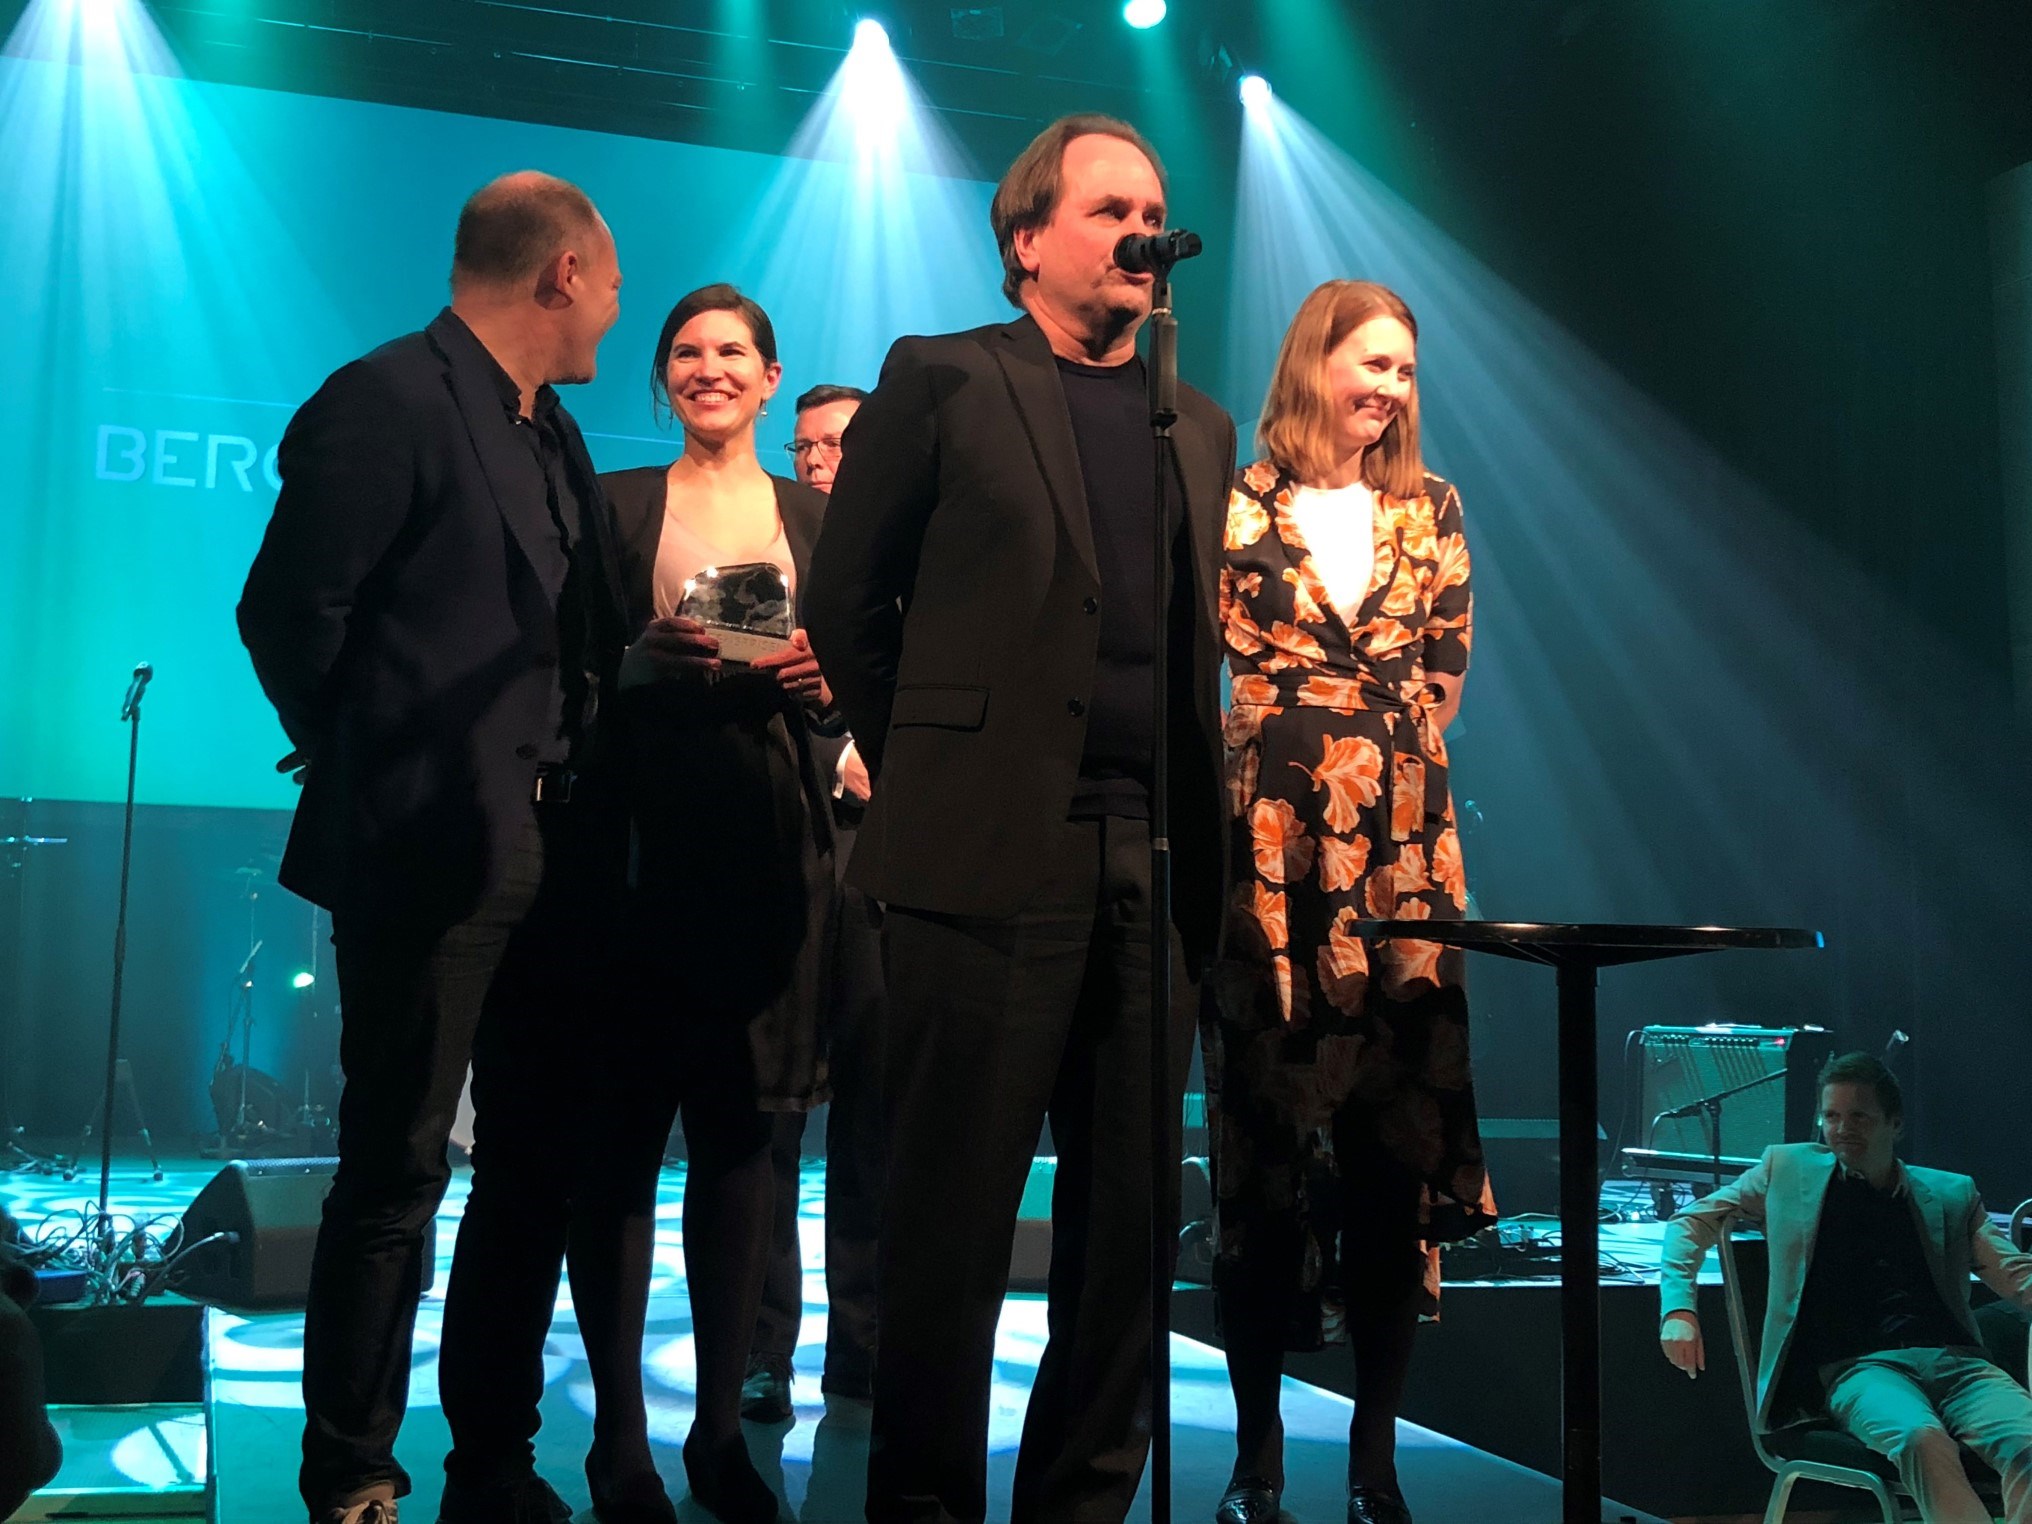 Bergen Awards 2018 prize ceremony. Photo: Lisbet K. Nærø